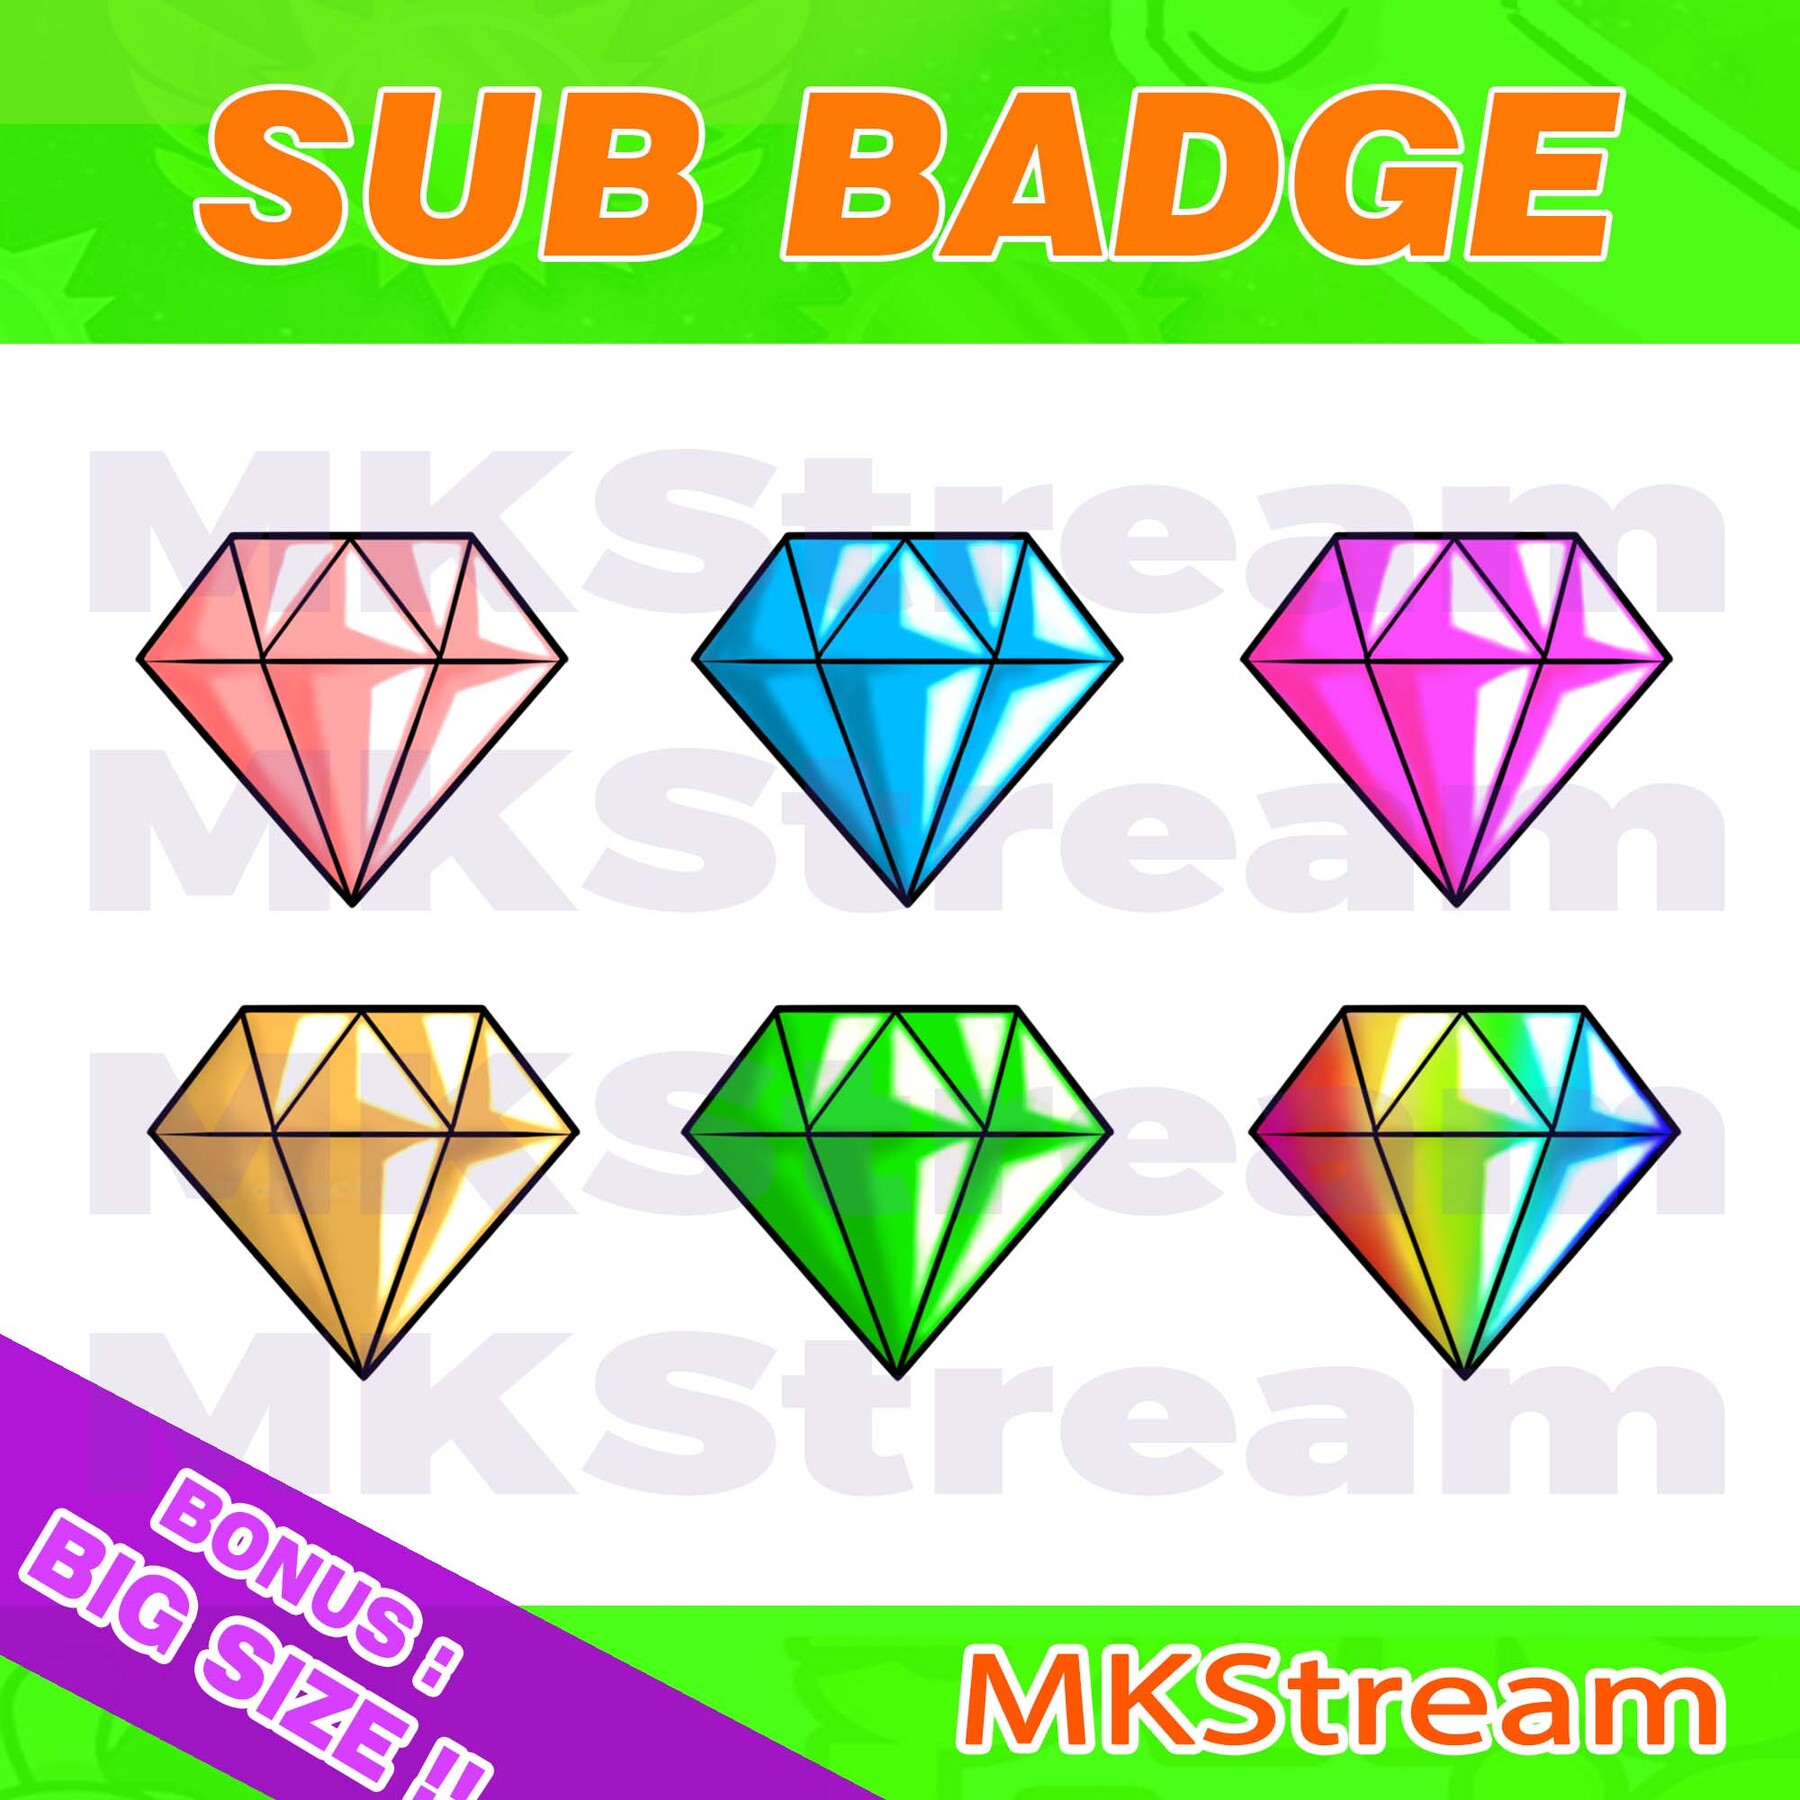 ArtStation - Twitch SUB Badges